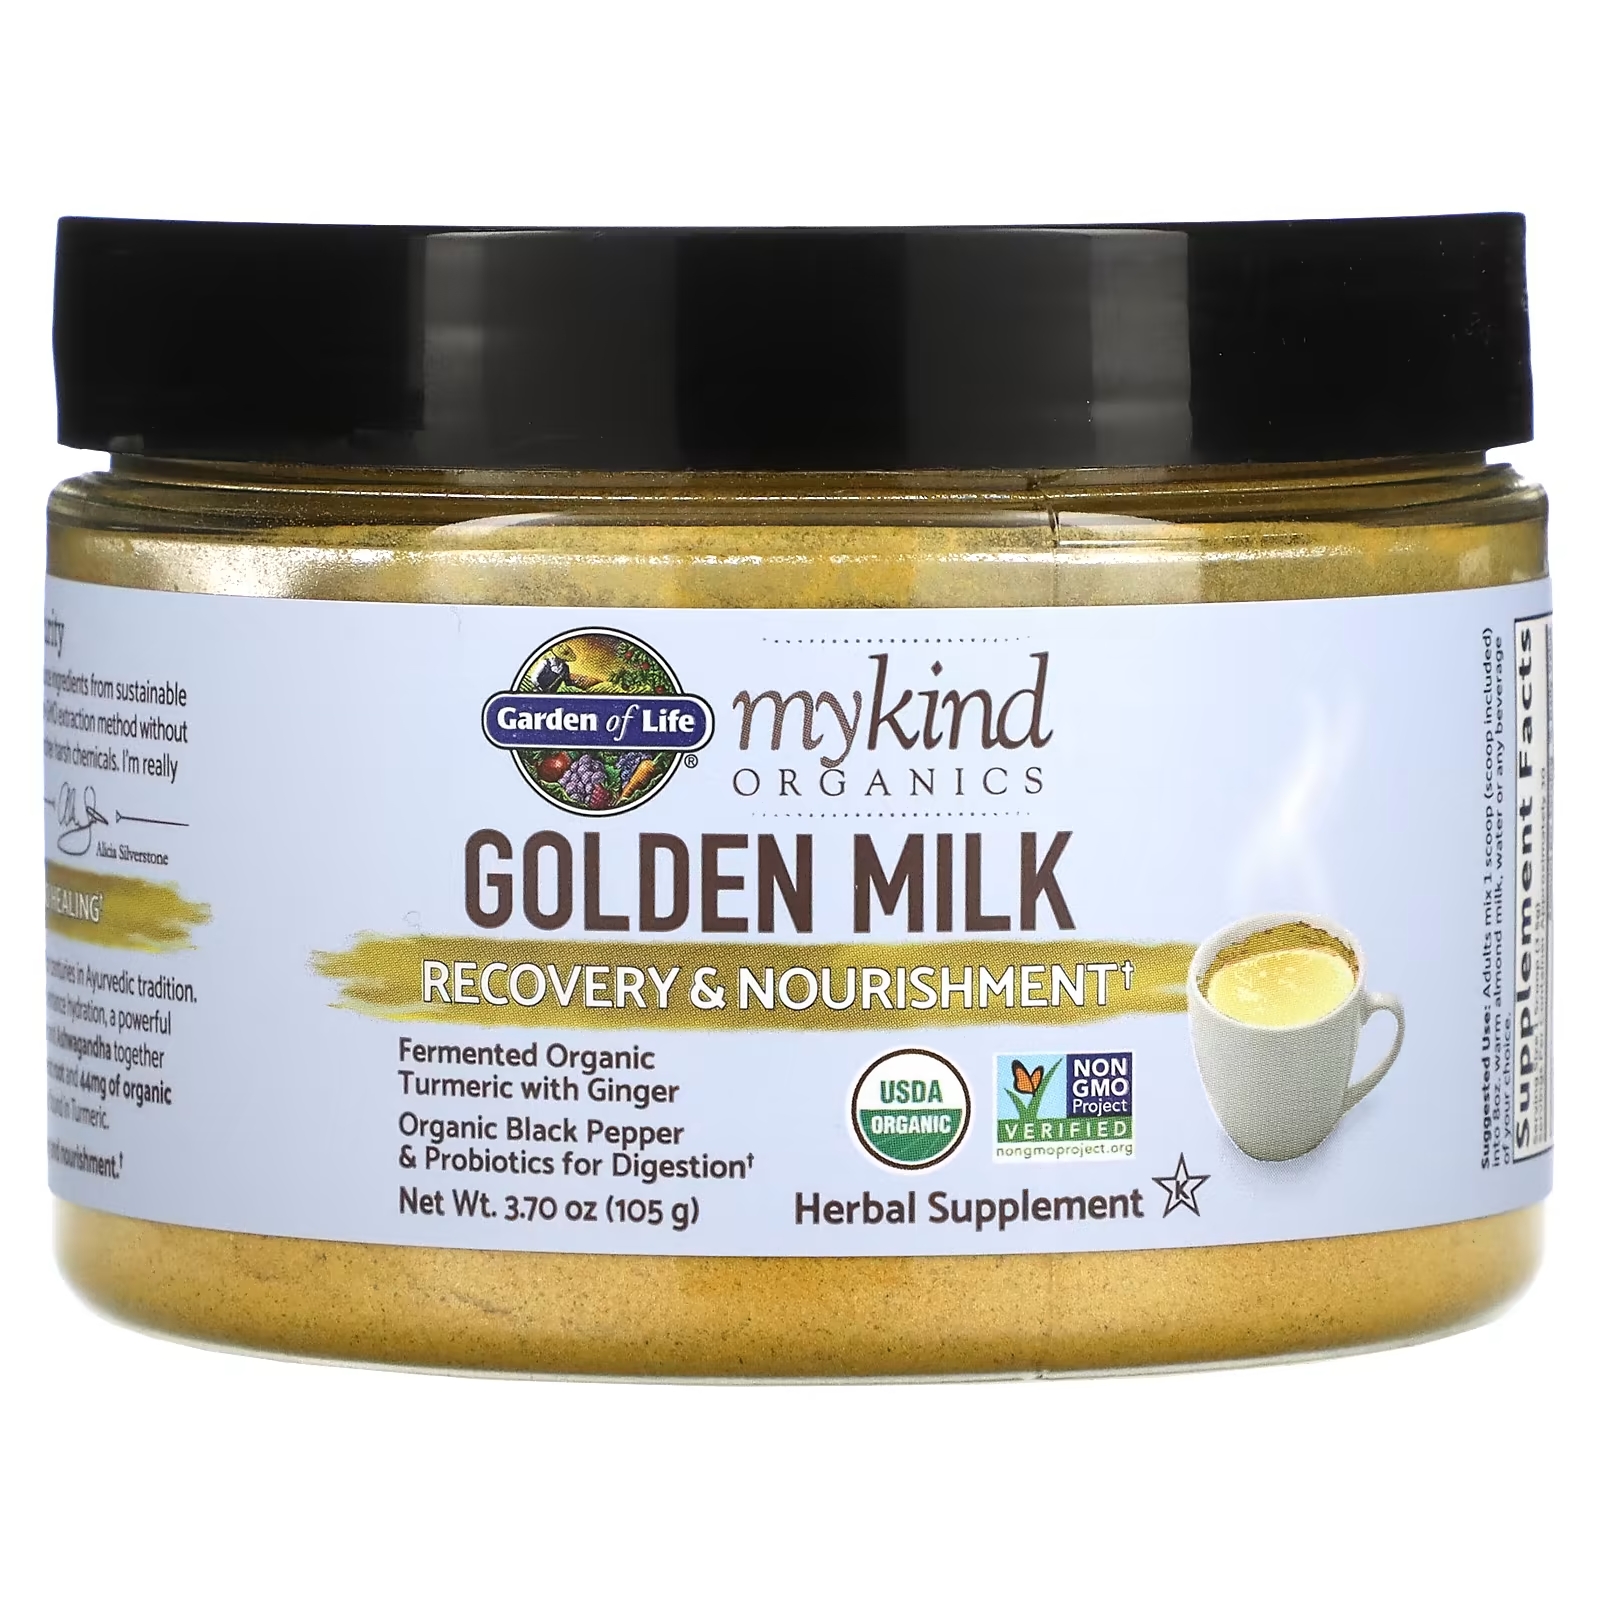 Золотое Молоко - Восстановление и Питание Garden of Life MyKind Organics, 105 г